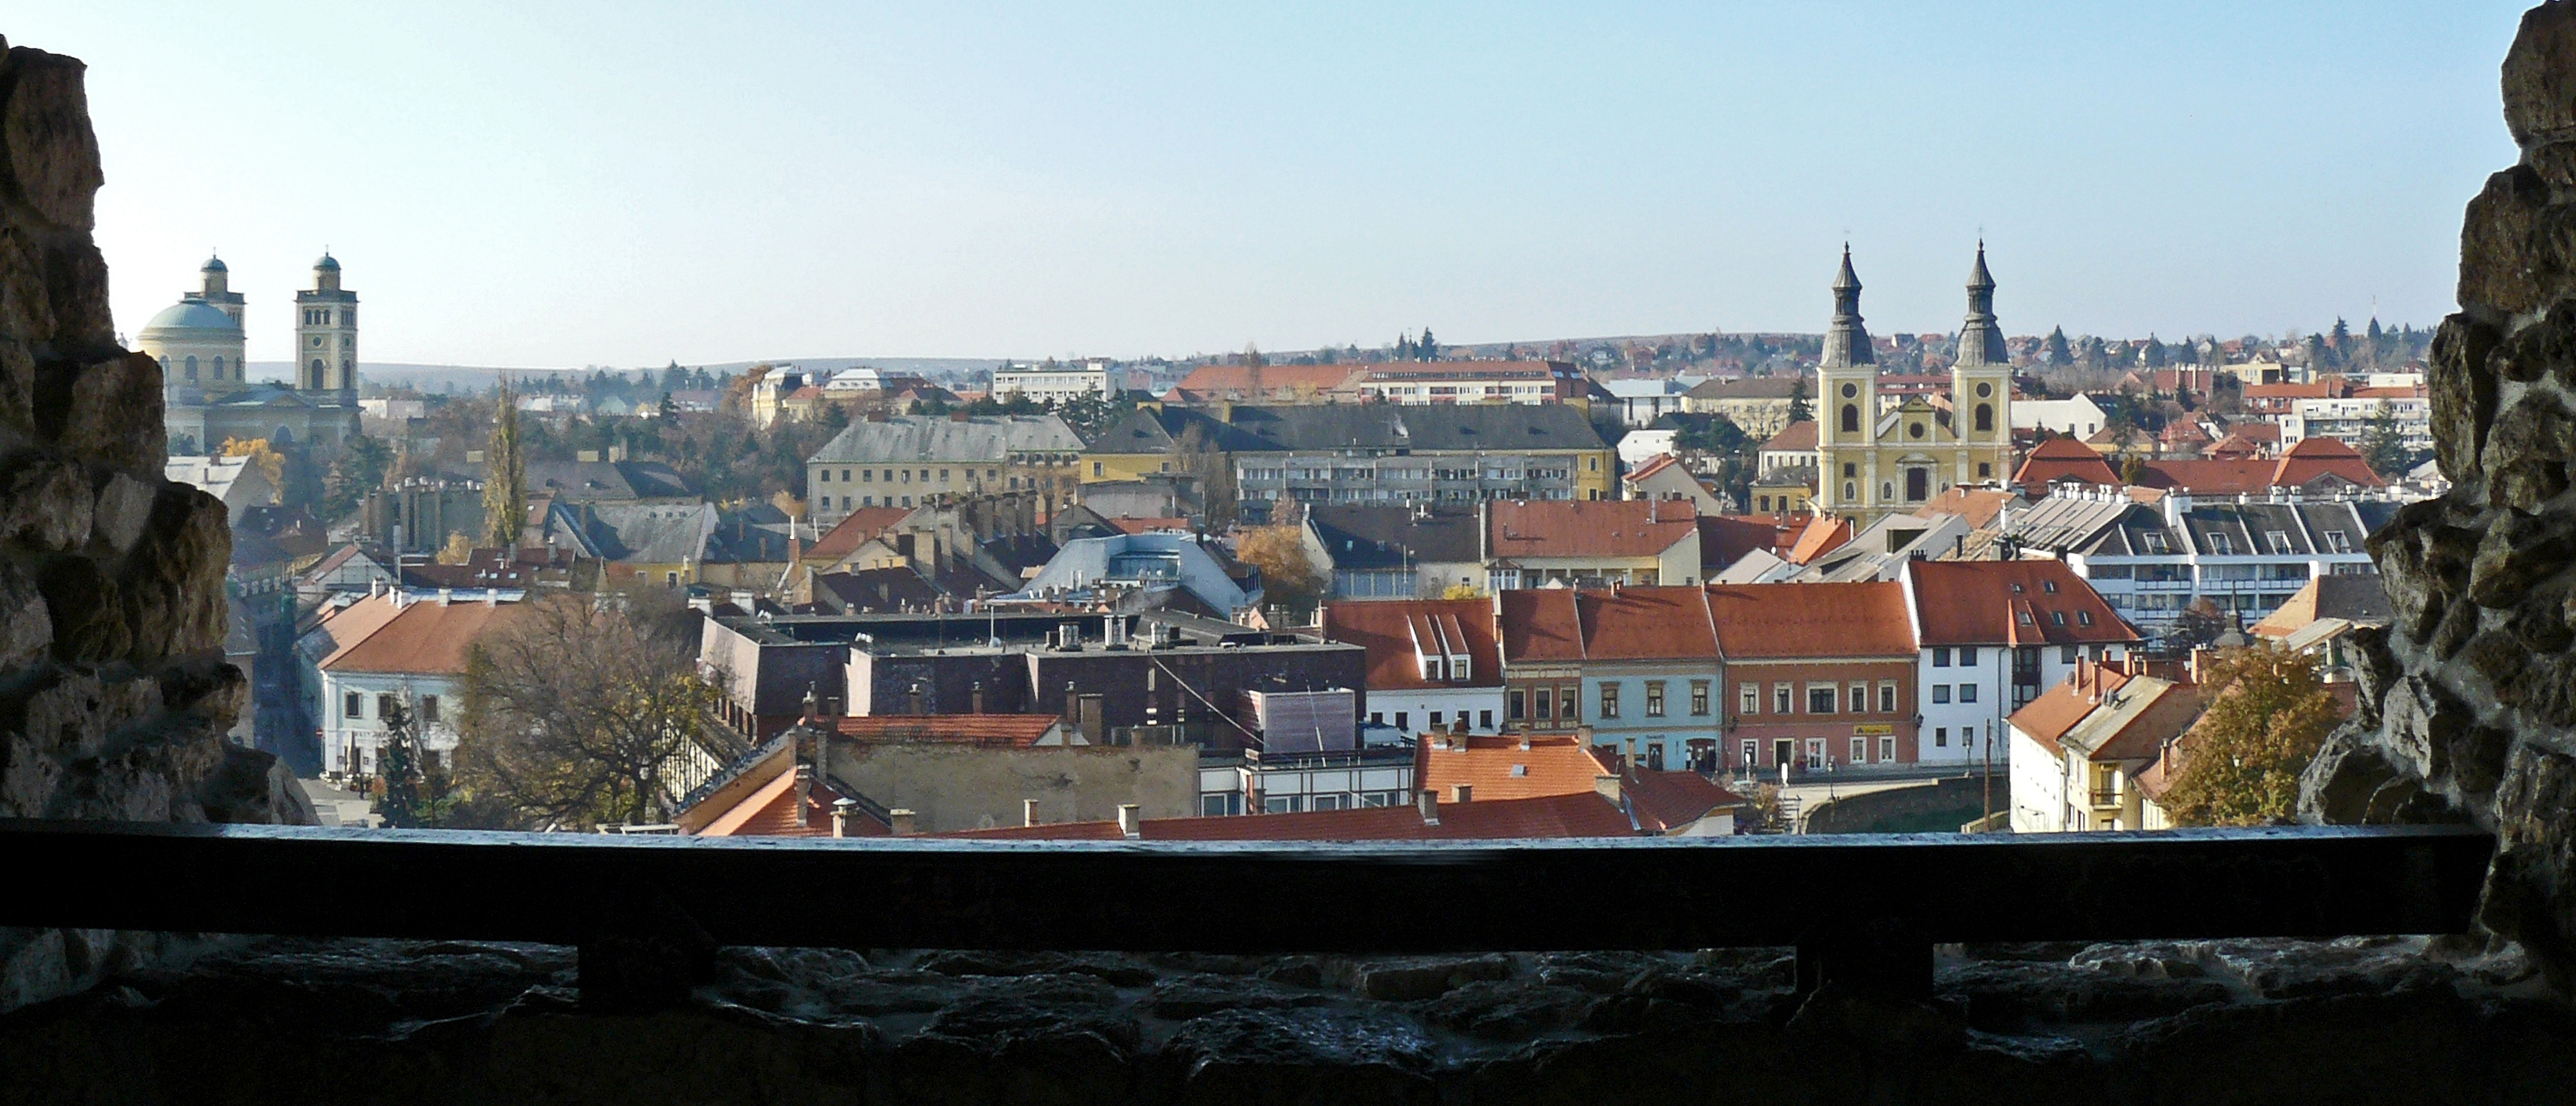 Egy nagyon gazdag történelmű magyar városban készült a kép. Felismered, melyikben?